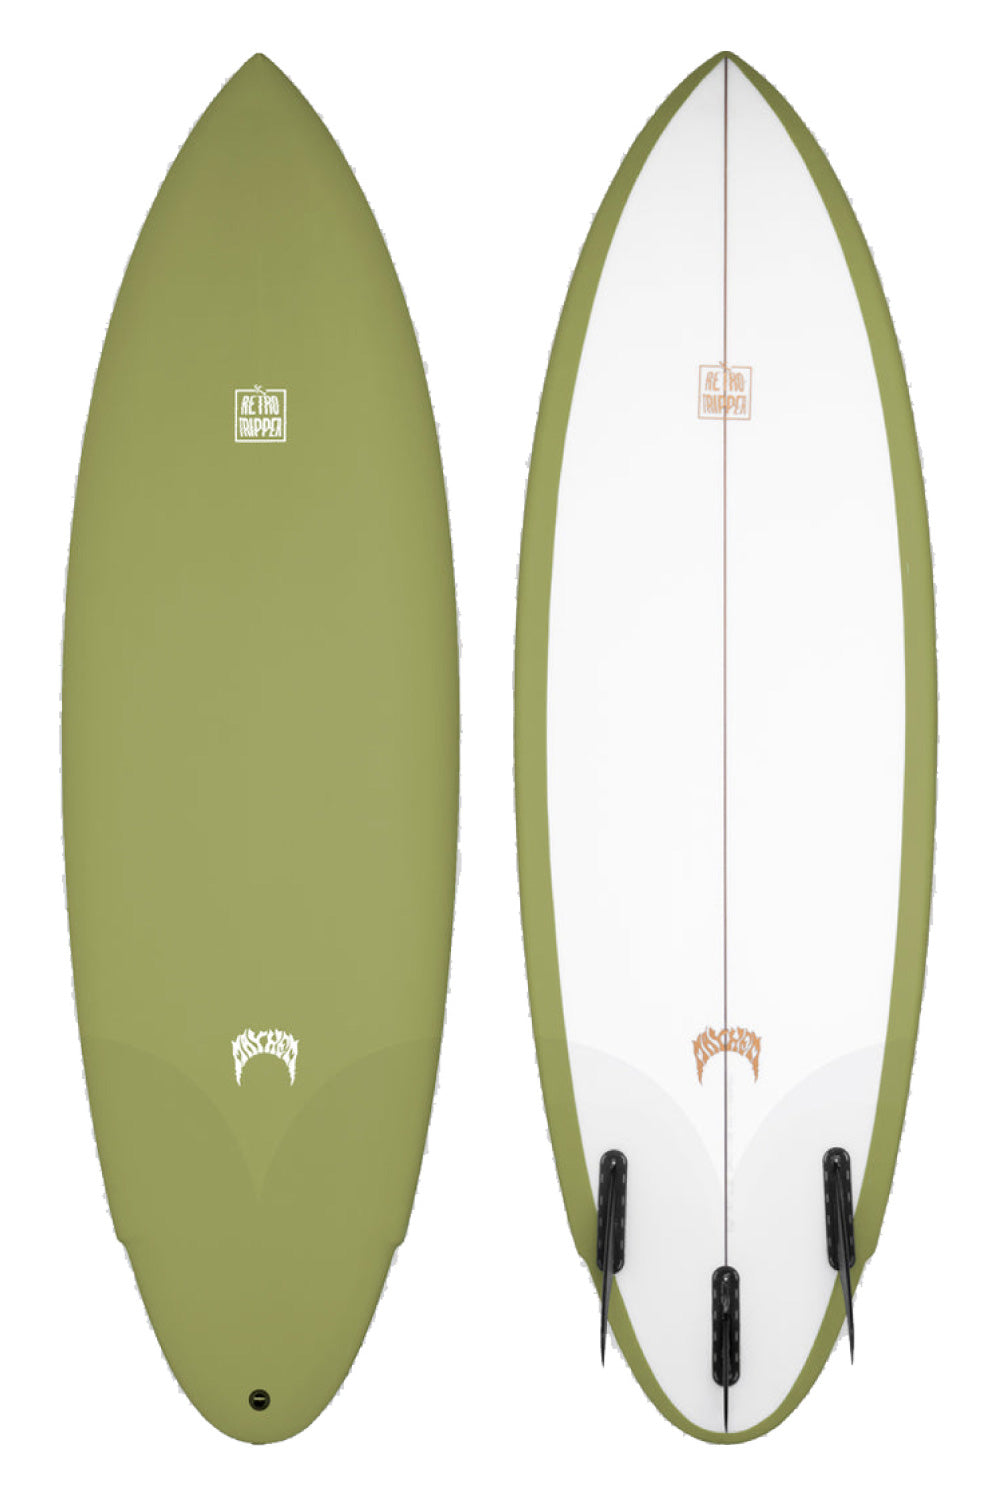 Lost Surfboard Retro Tripper Surfboard w/ Spray